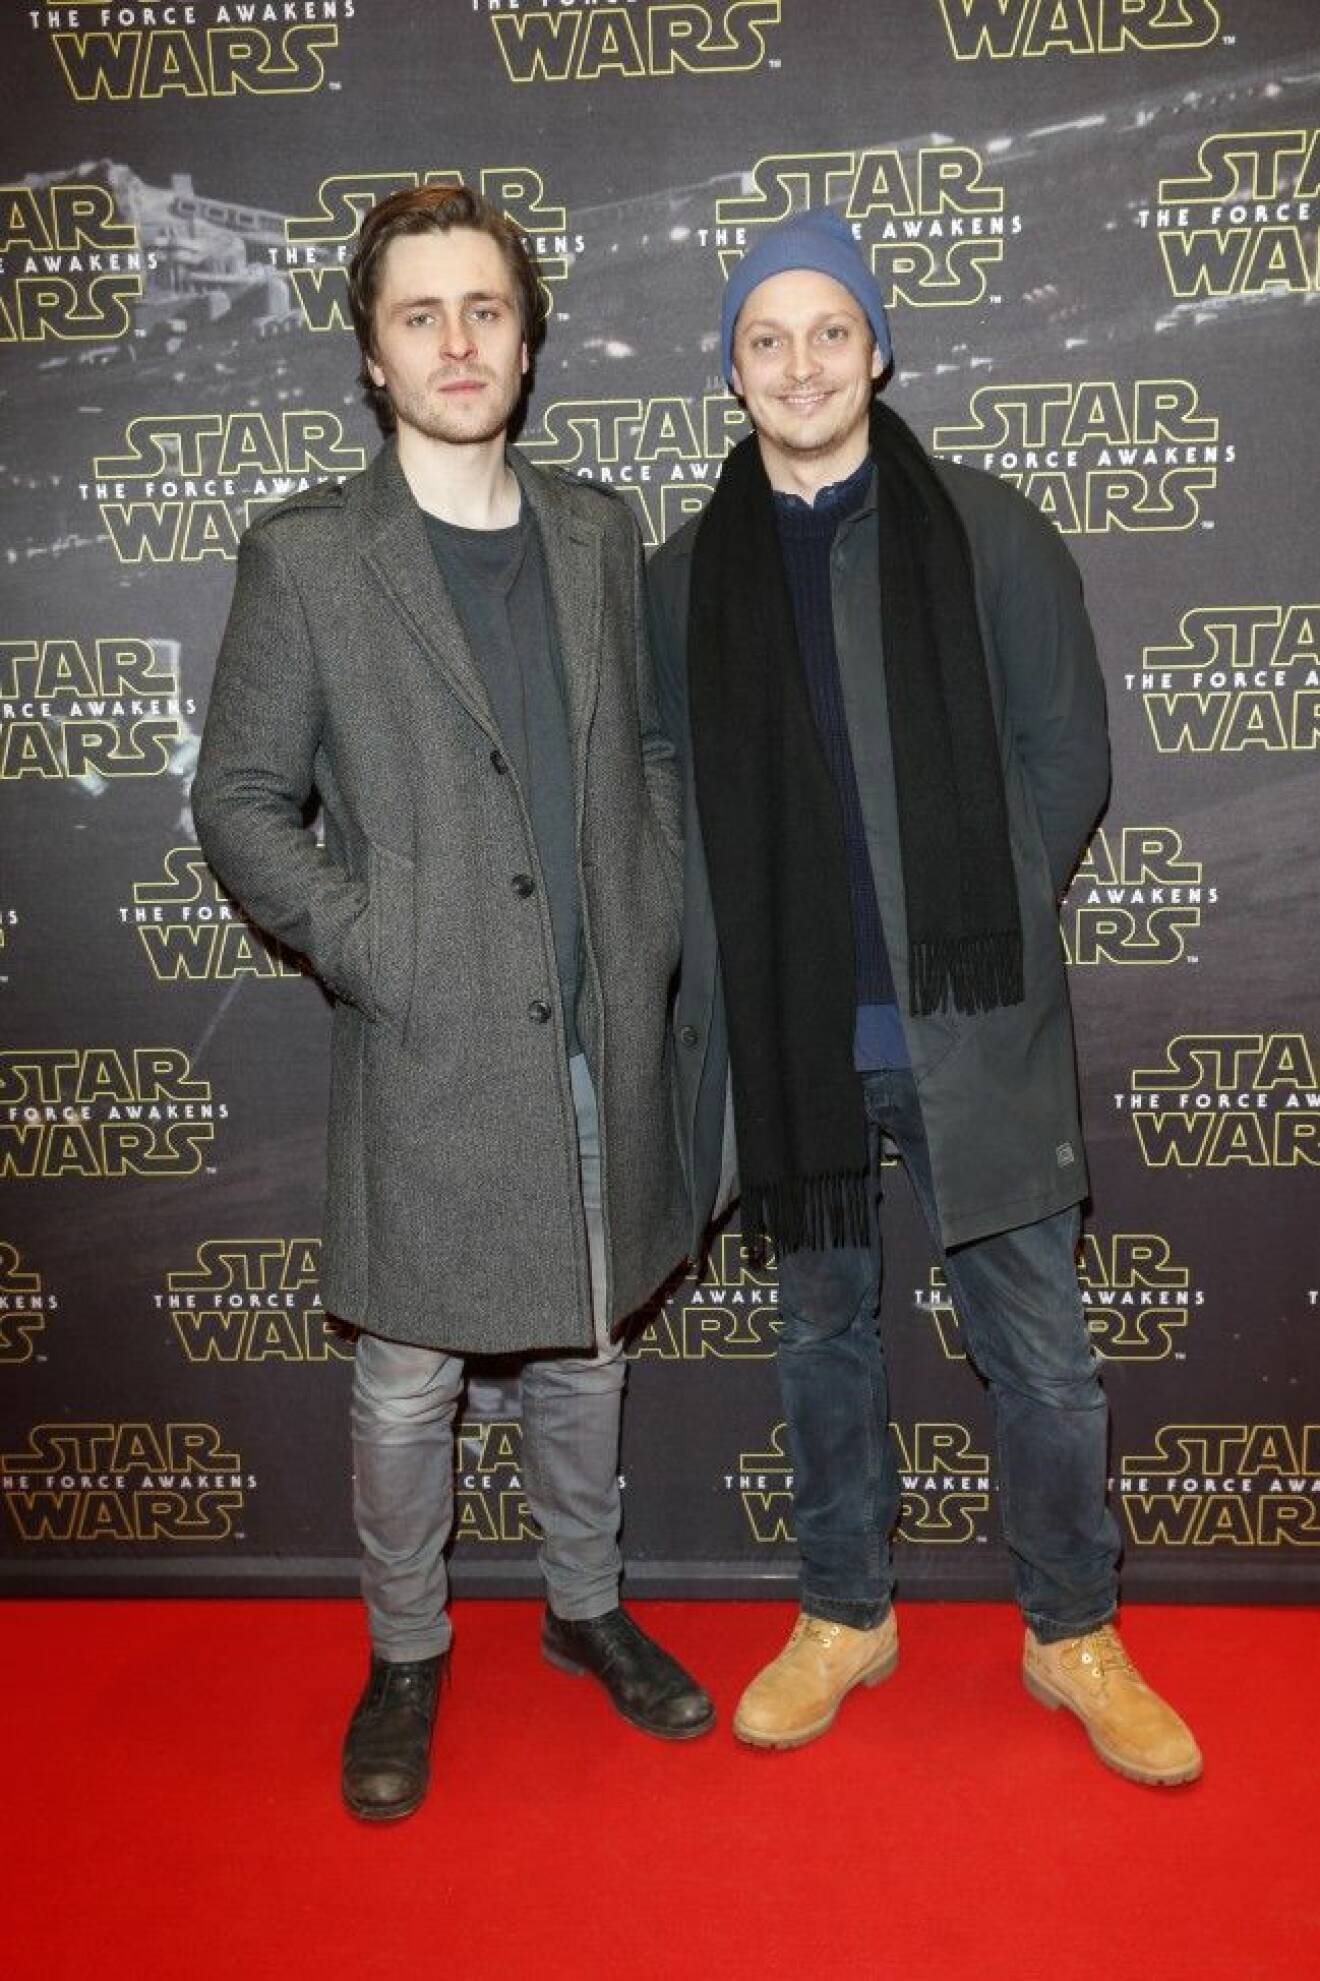 Star Wars Sverrir Gudnason kom med kompisen Jon LaCotte